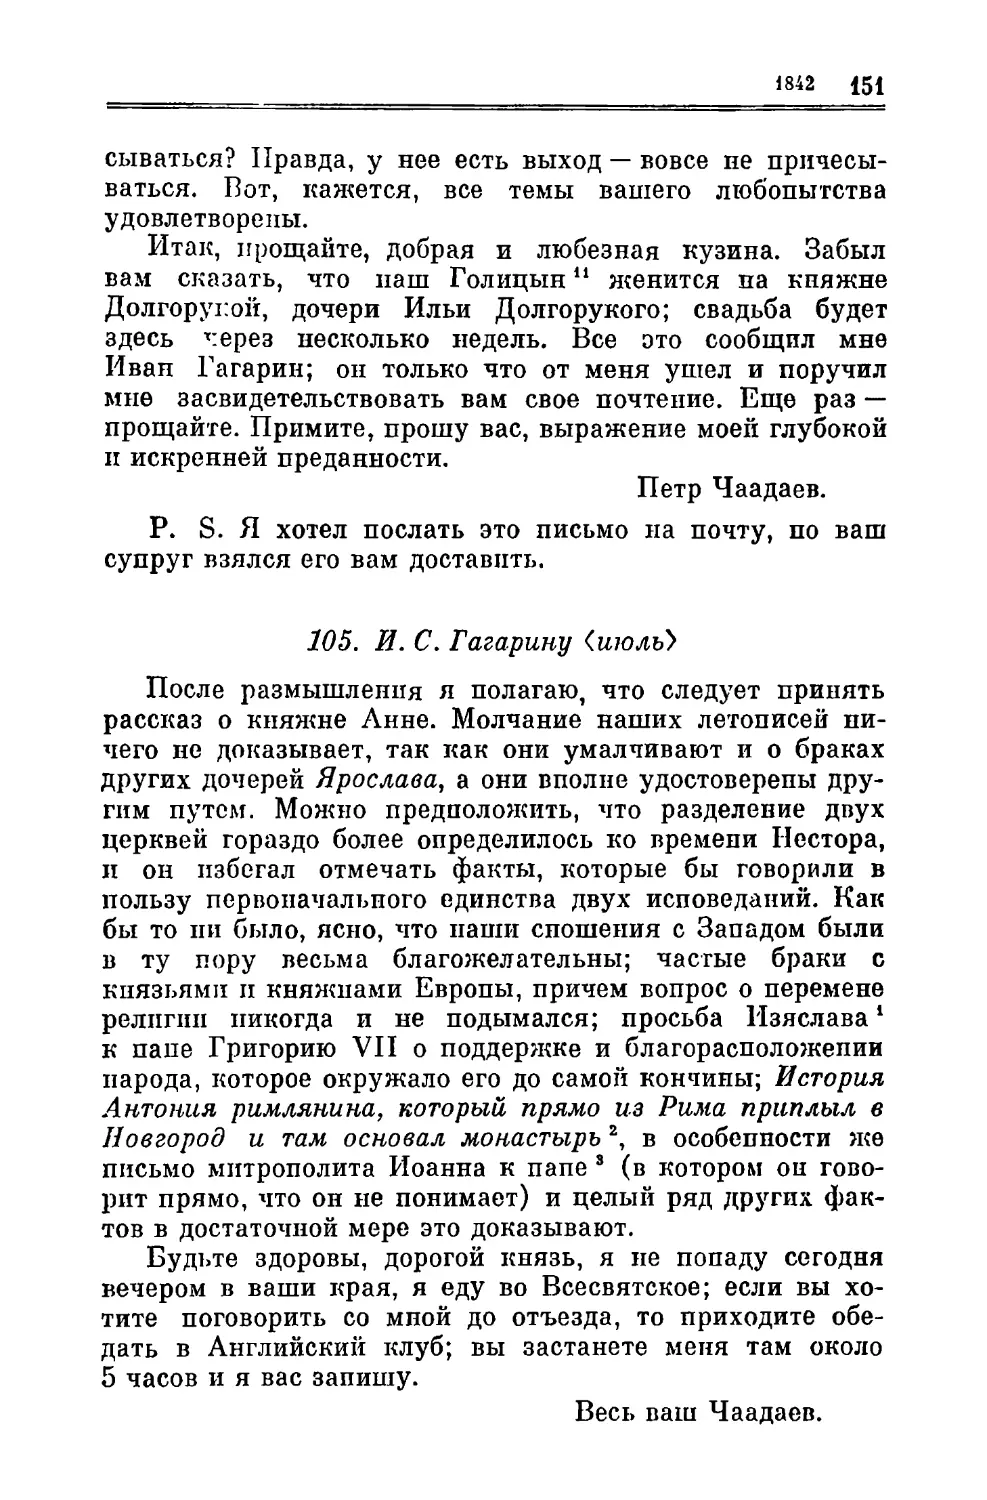 105. Гагарину И.С. VII